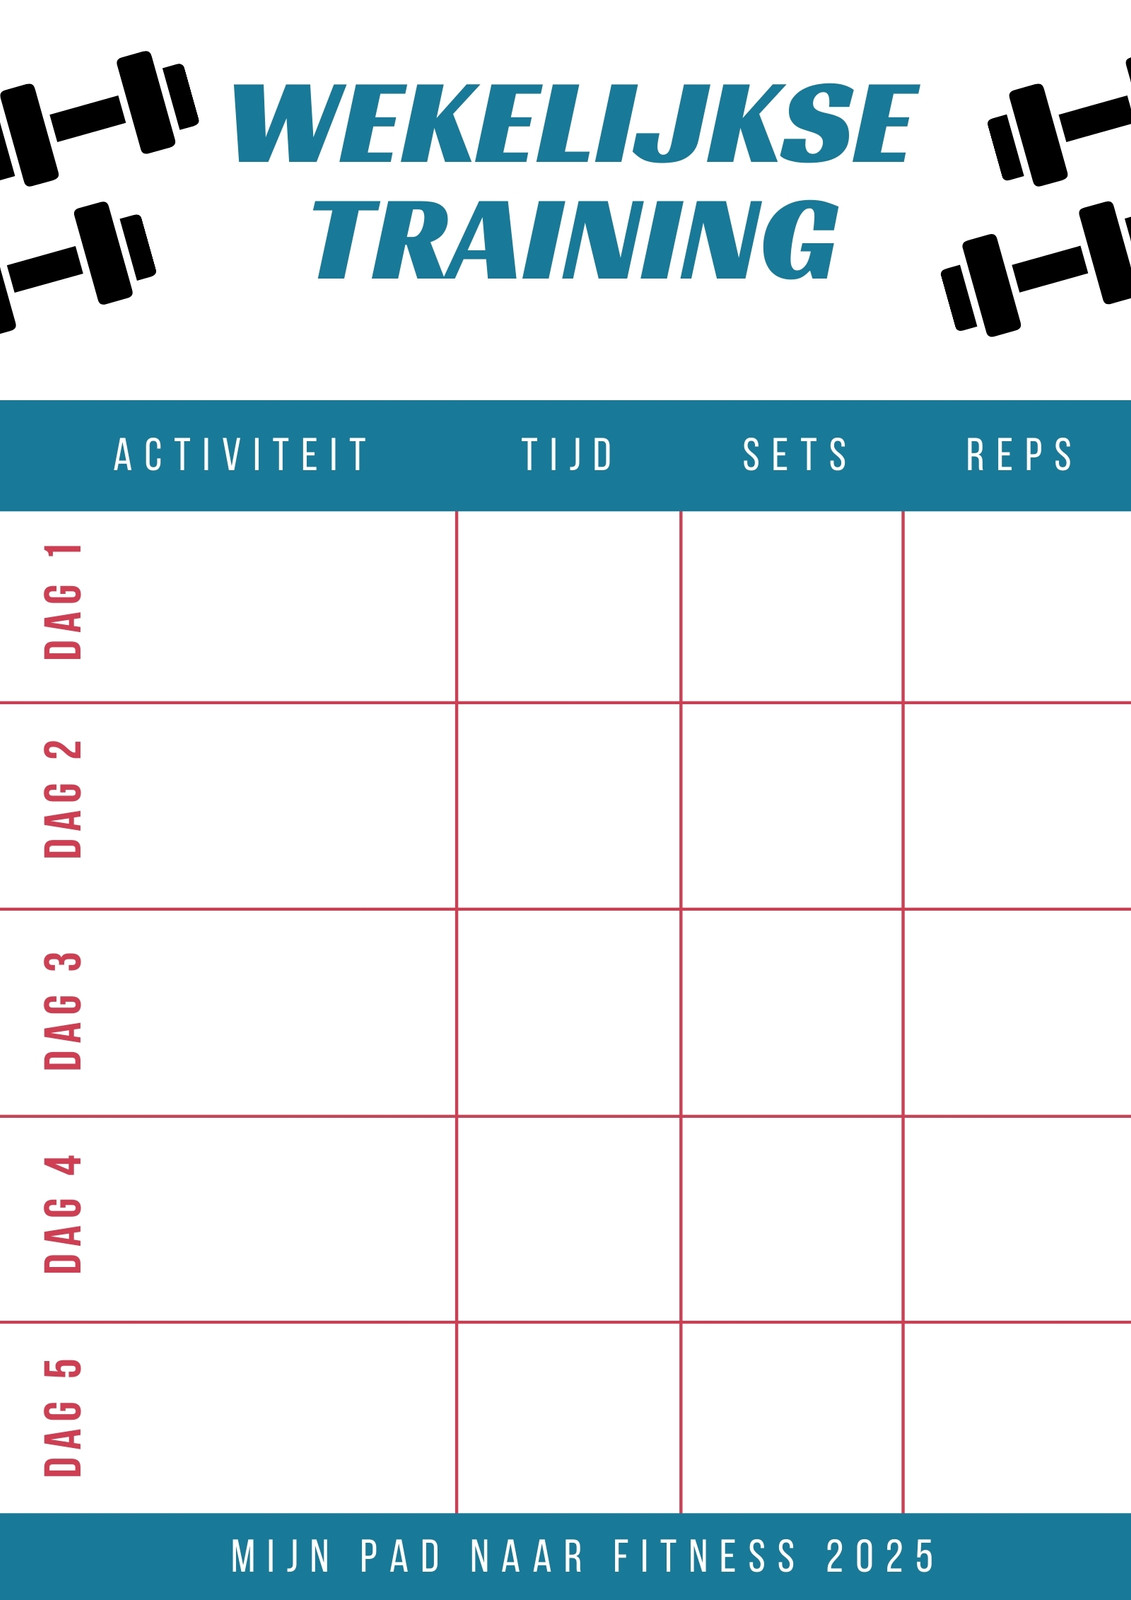 Gratis, Aangepaste Printbare Trainingsschema Online | Canva